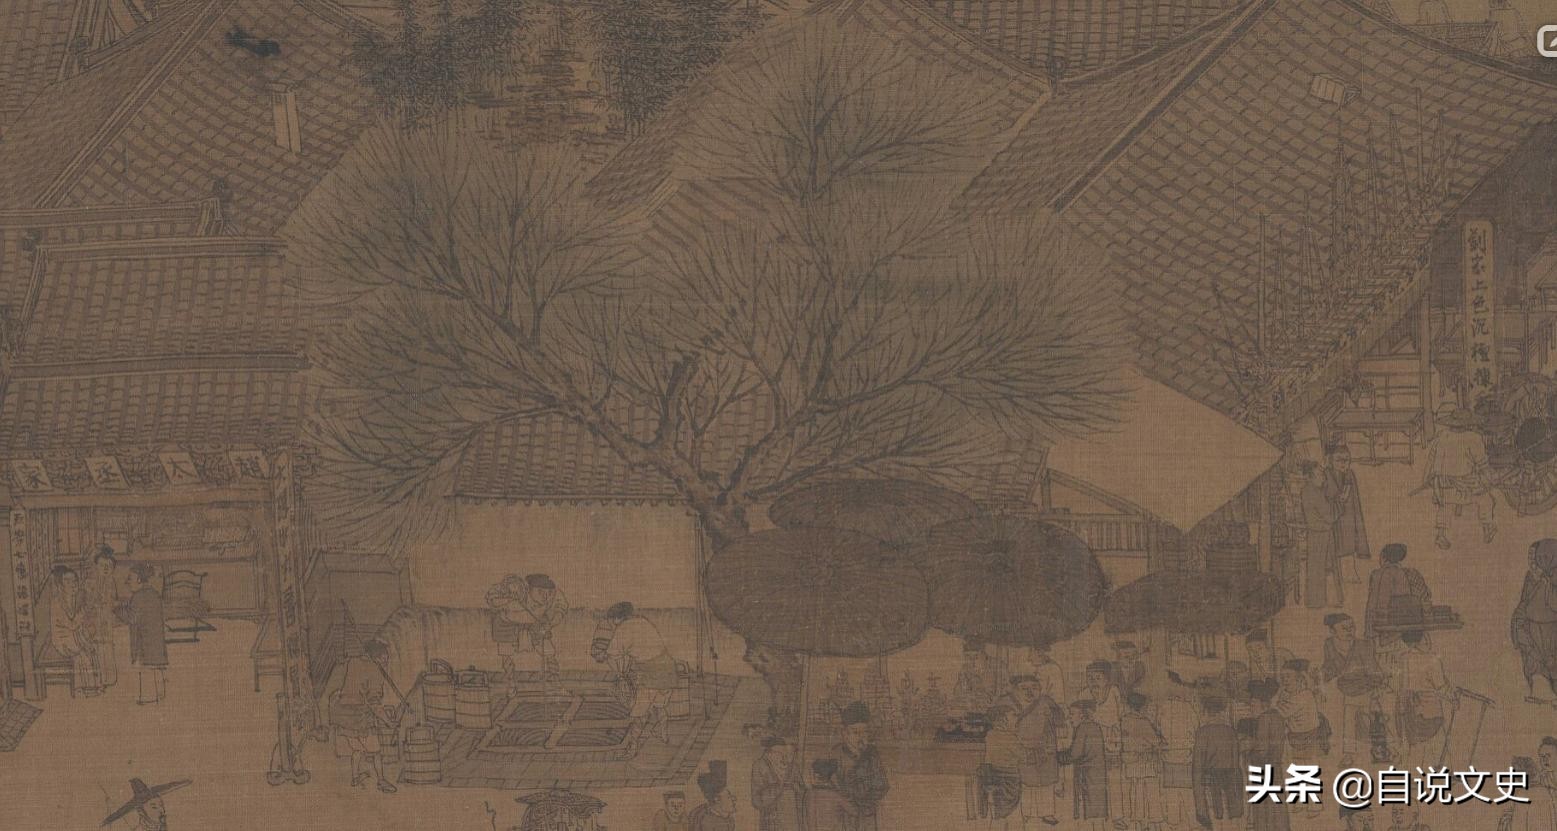 北宋张择端的《清明上河图》，描绘的是哪个季节？